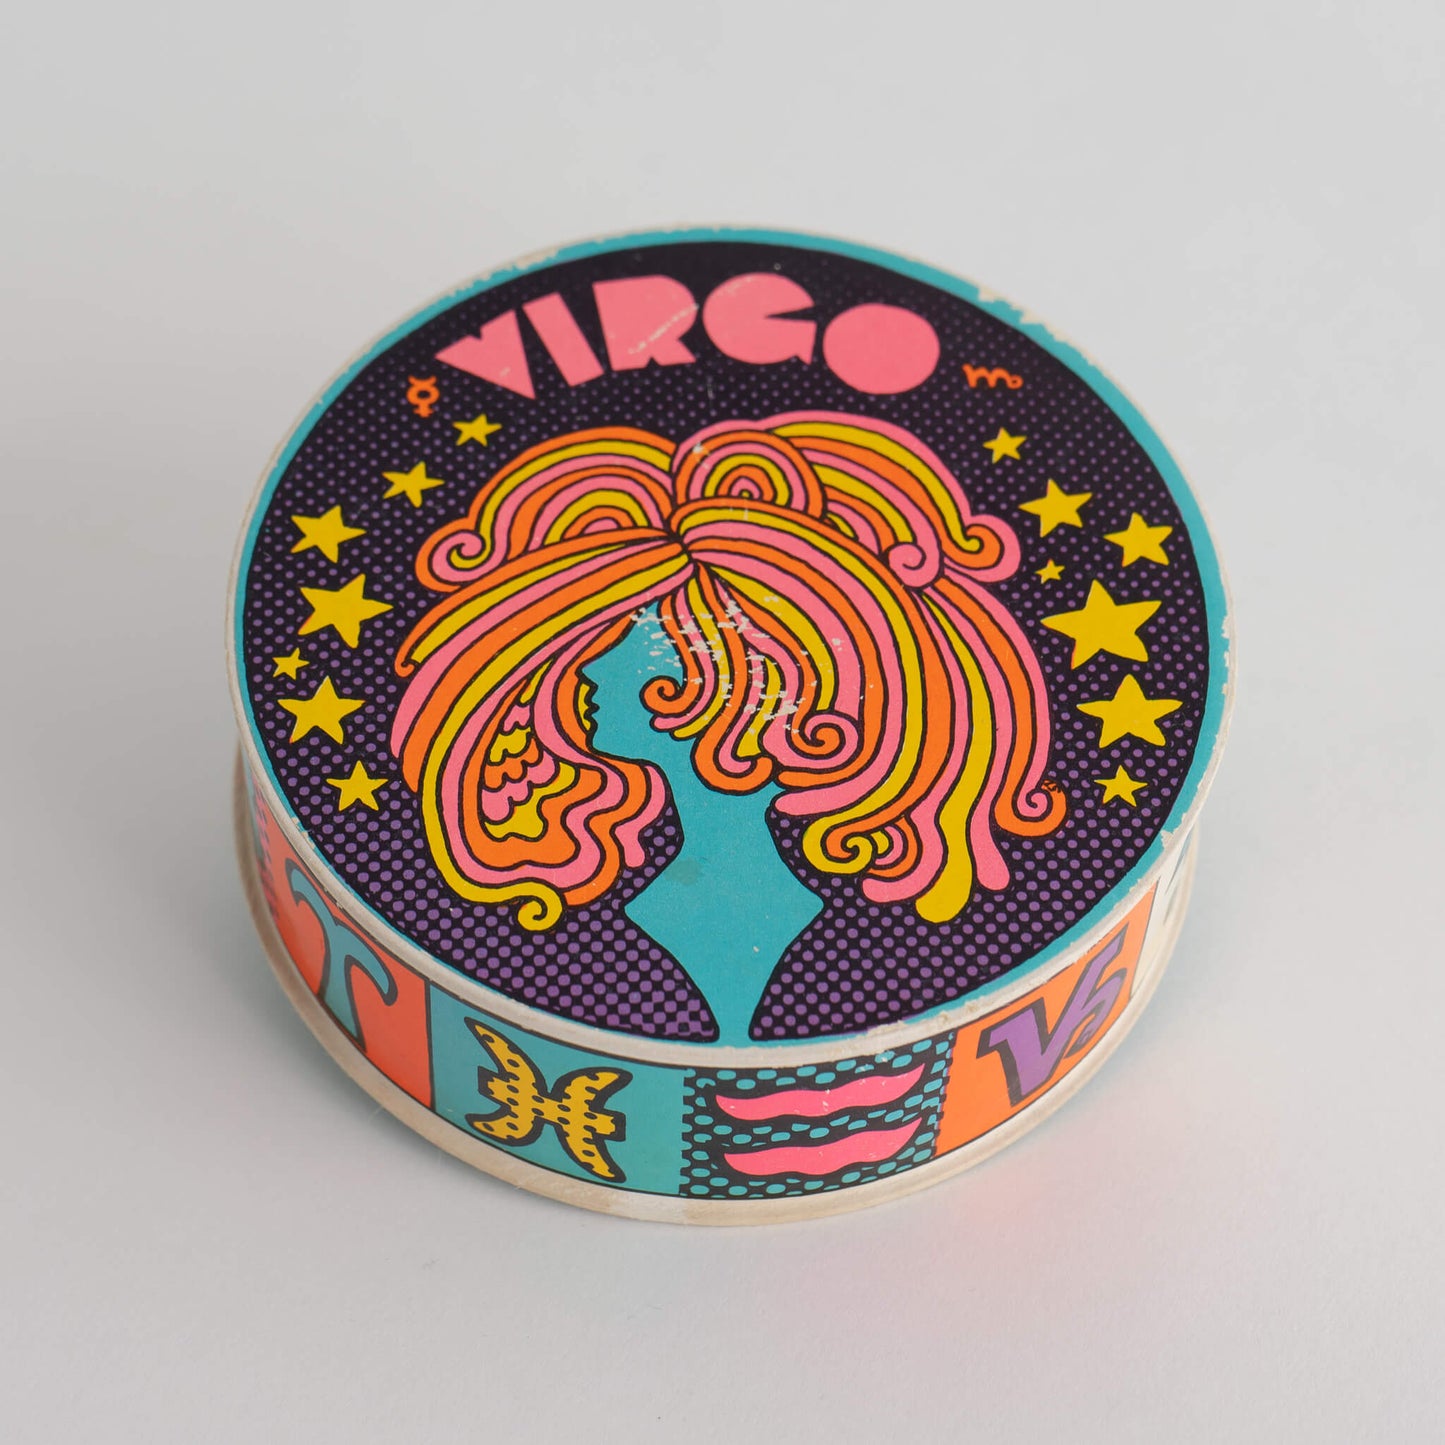 Vintage Virgo Zodiac Puzzle